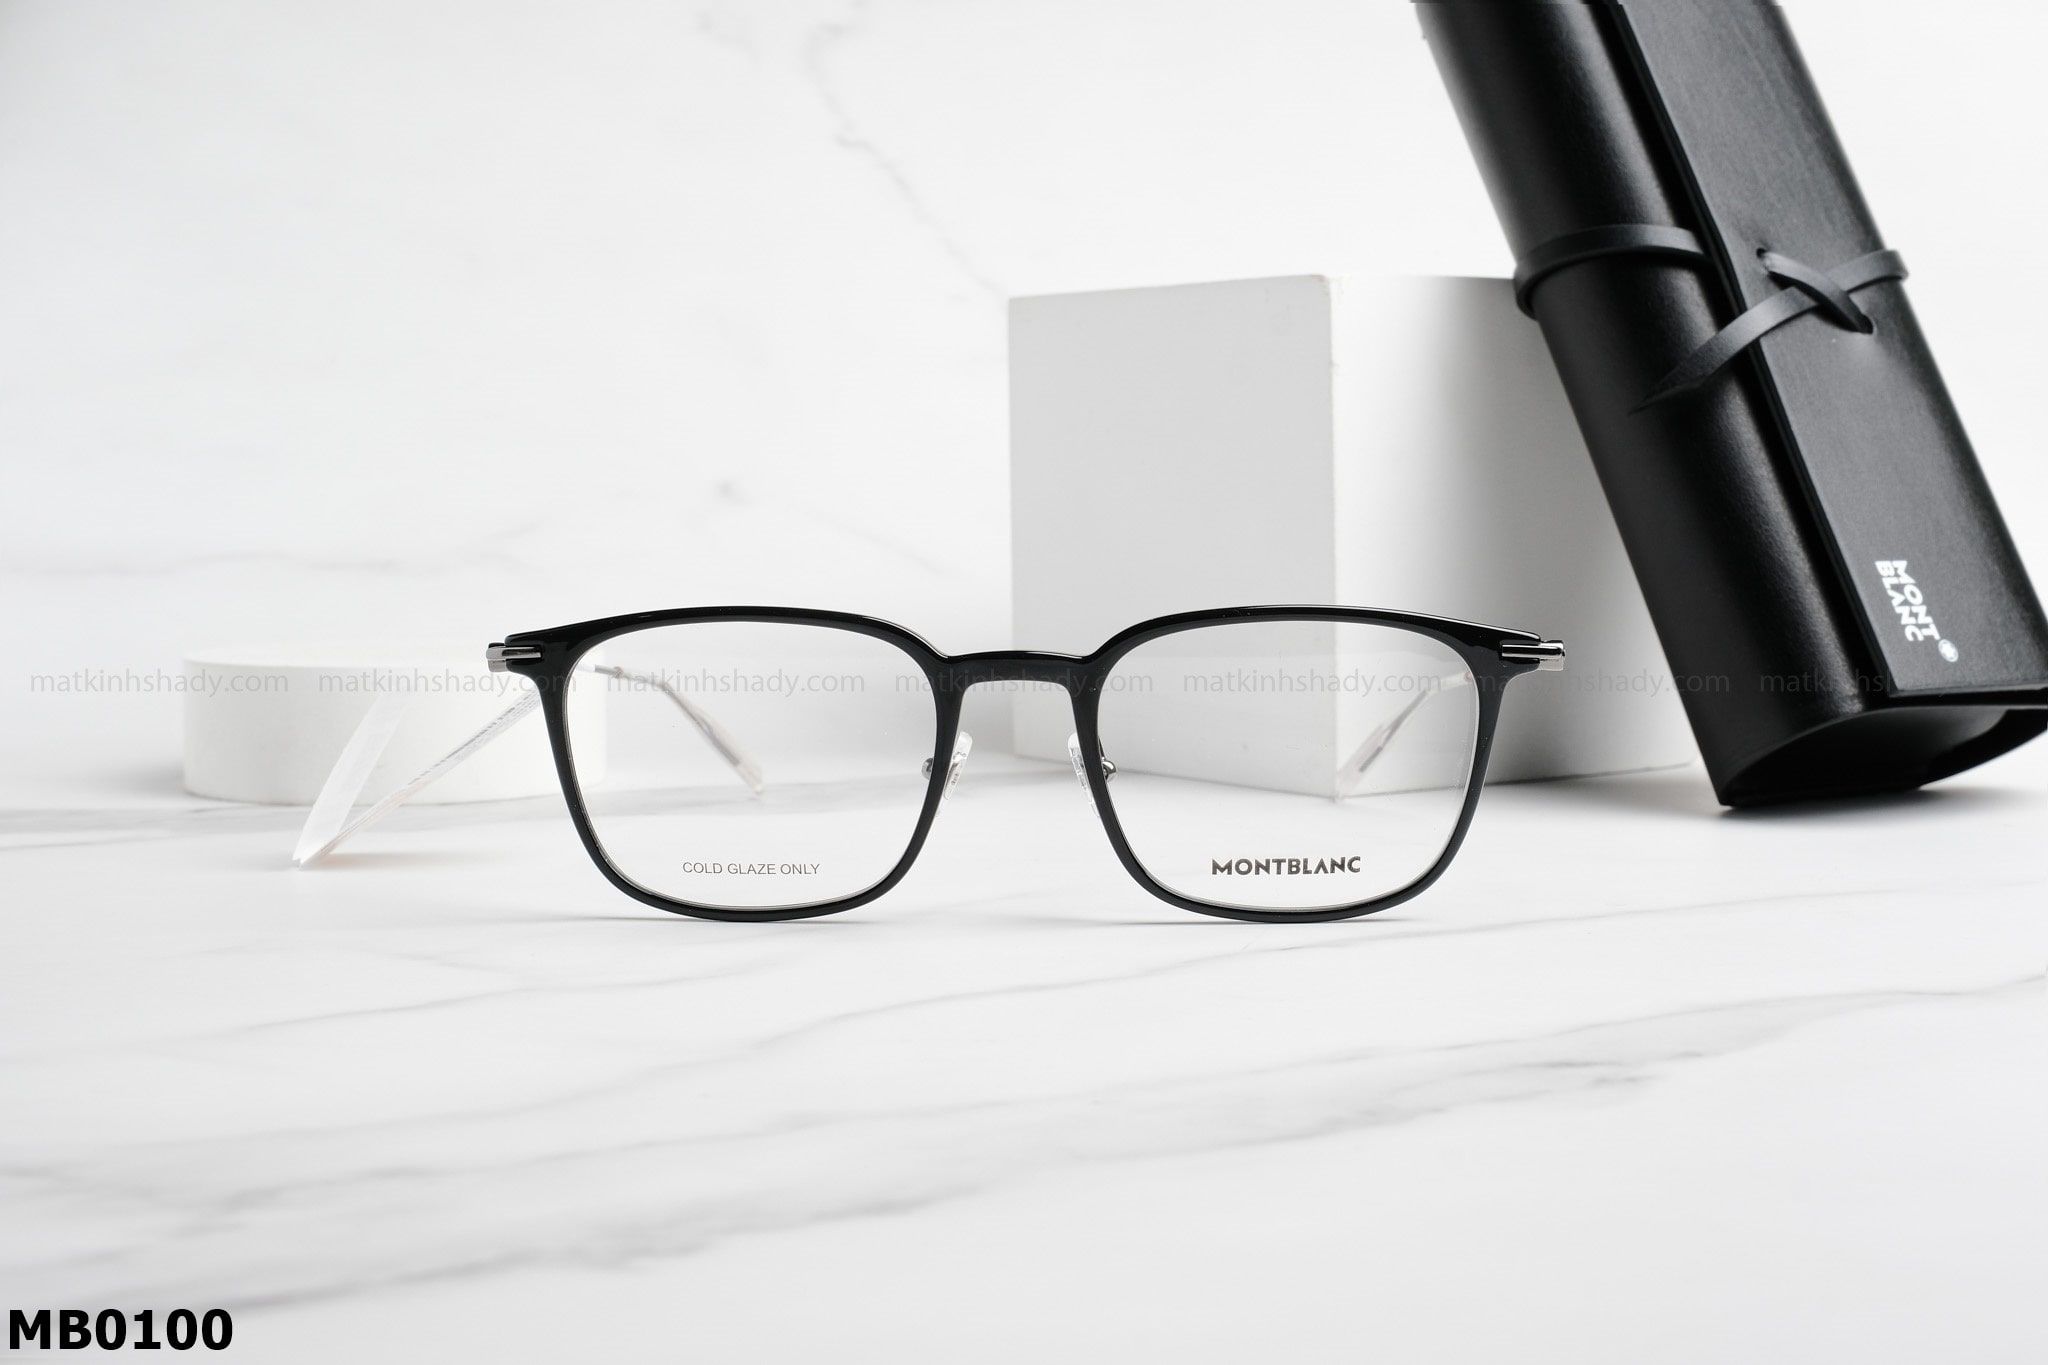  Montblanc Eyewear - Glasses - MB0100 